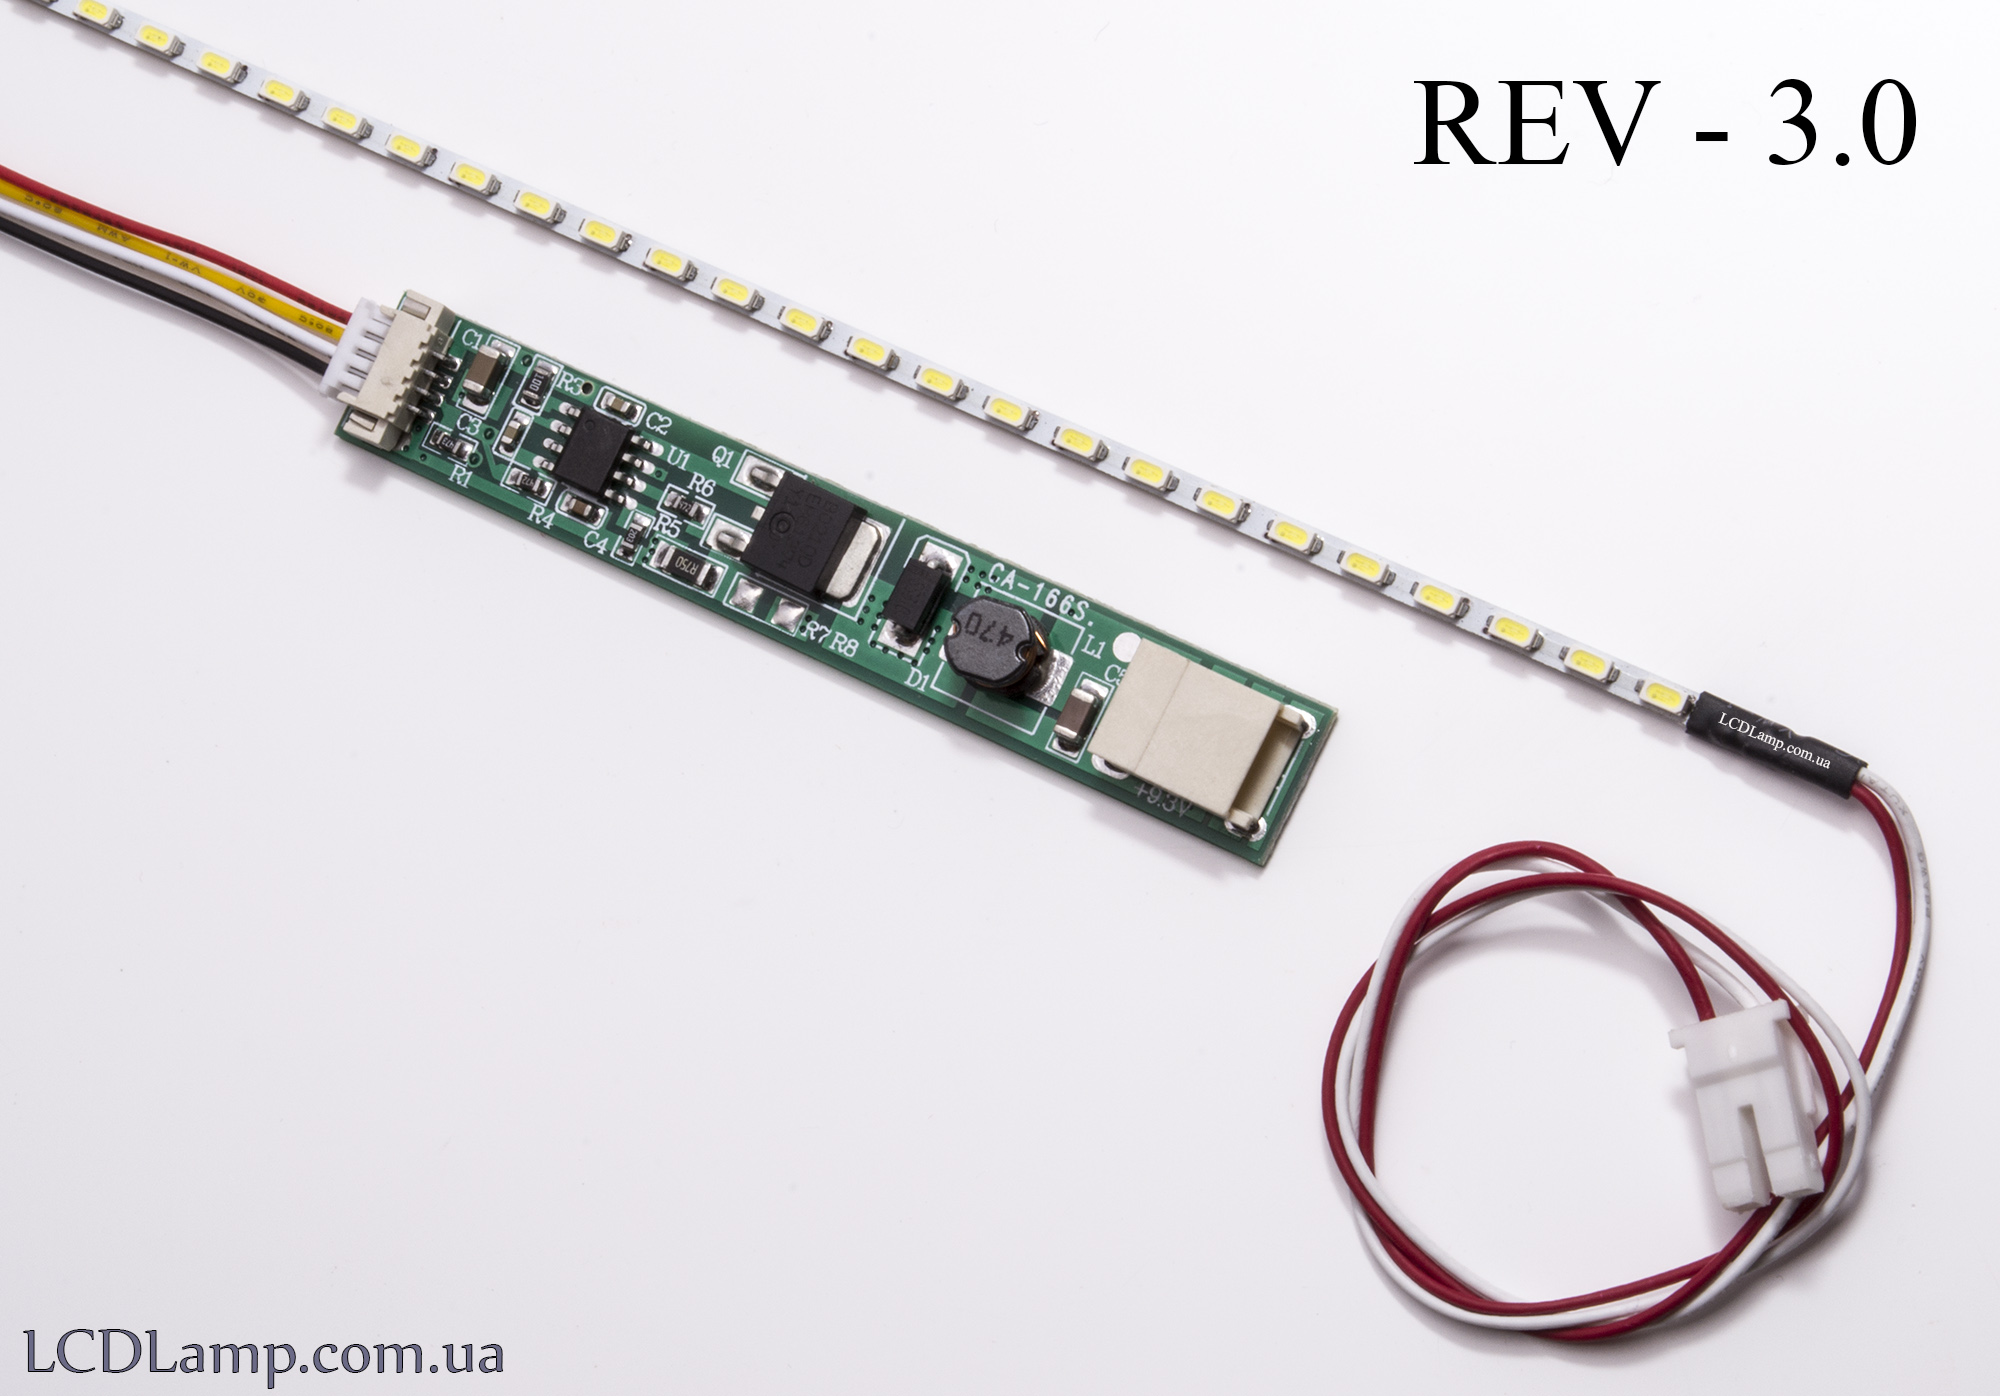 LED набор для ноутбука Rev-3.0(303мм.)